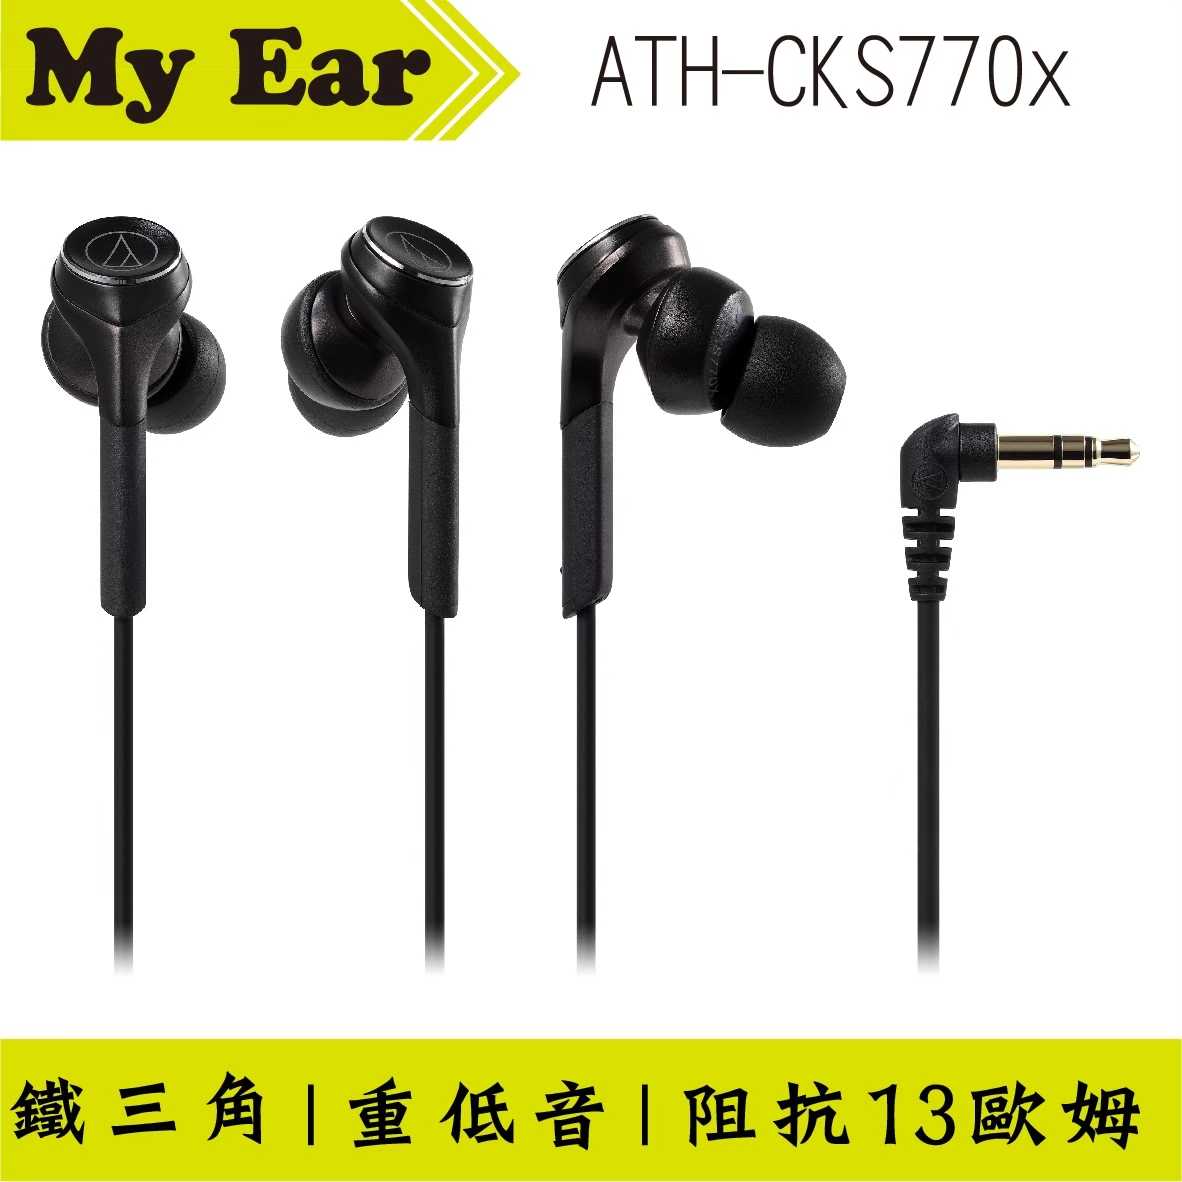 鐵三角 Cks770x 黑色 重低音 耳塞式 耳機 | My Ear 耳機專門店